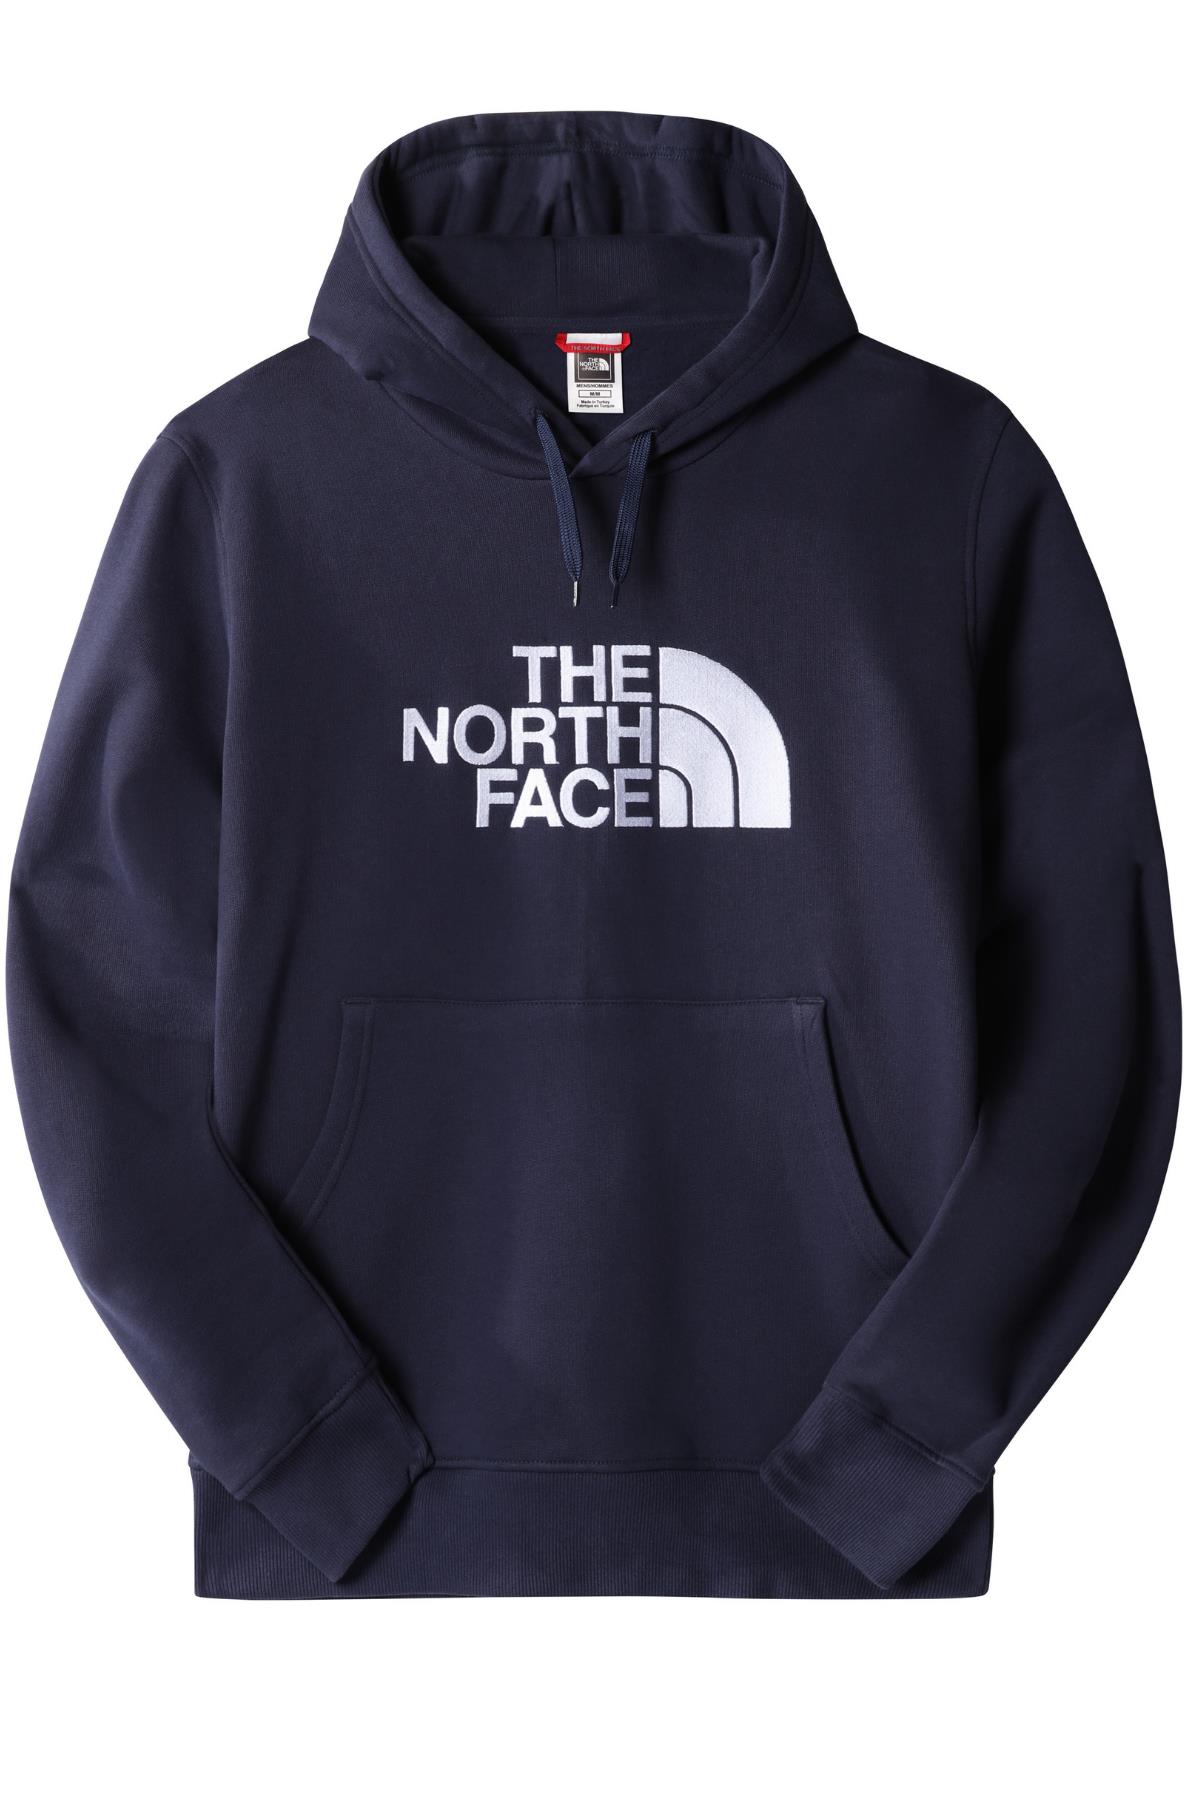 The North Face Erkek Drew Peak Pullover Hoodie - Eu